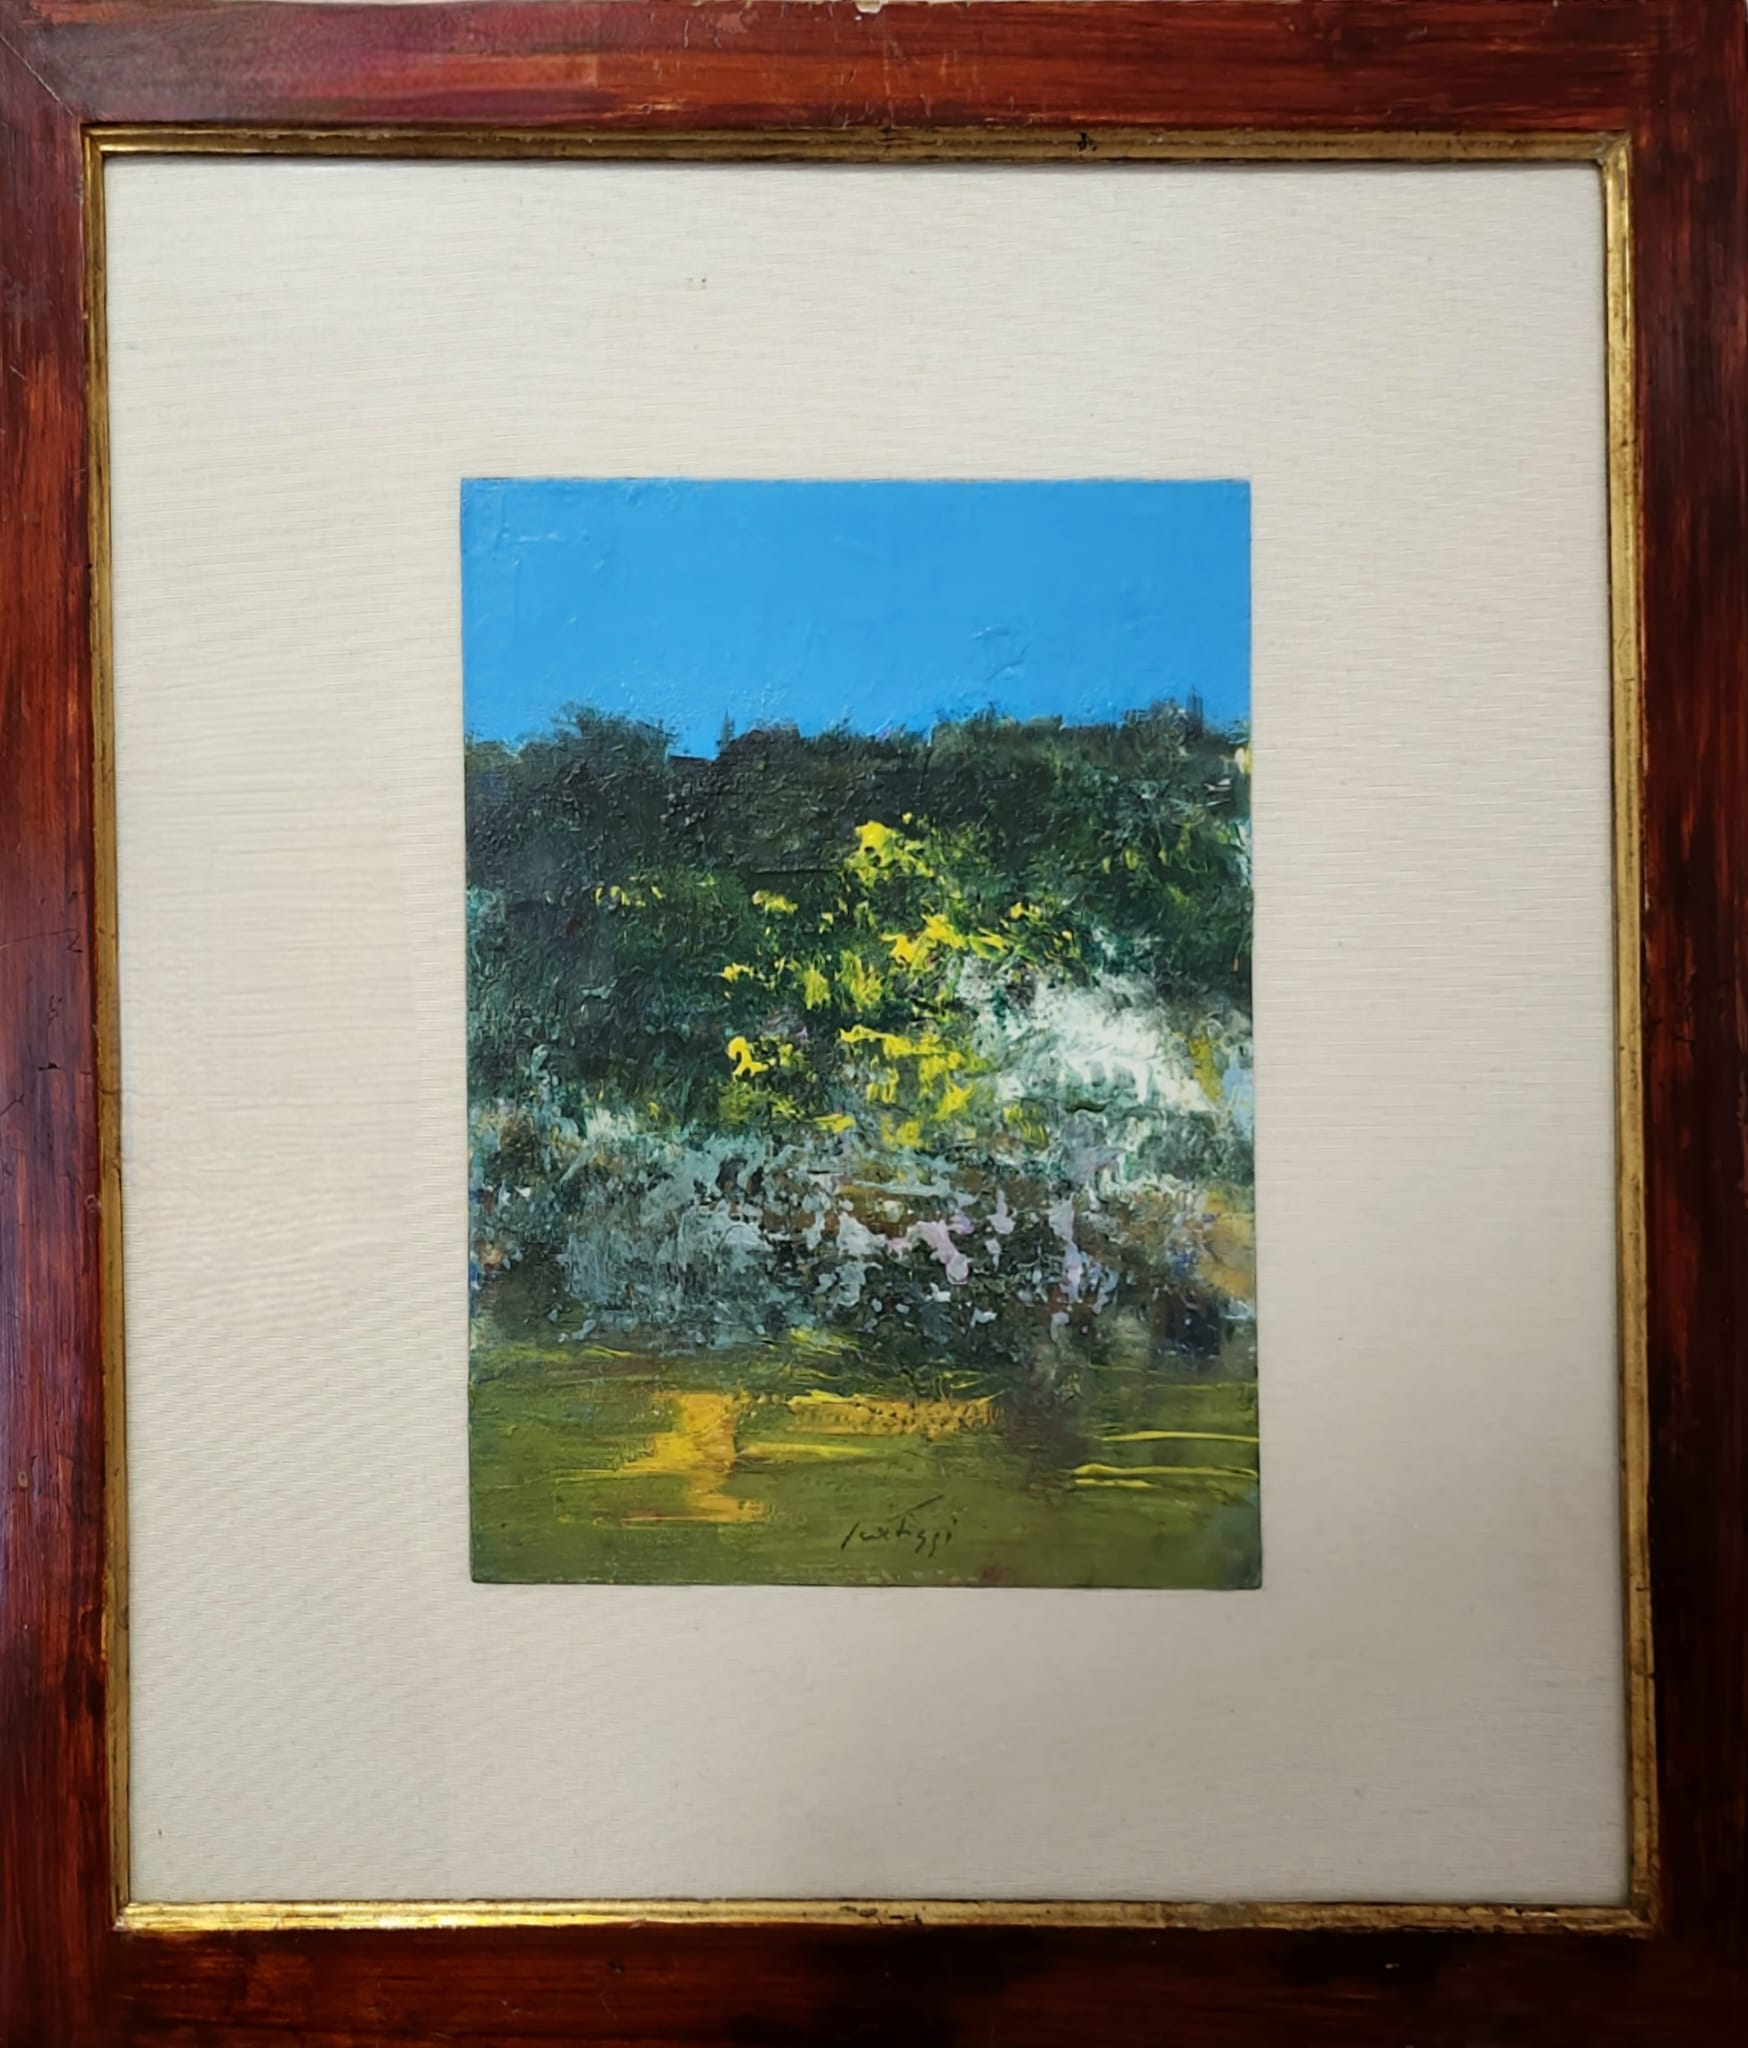 Sergio Scatizzi, Paesaggio, Olio su cartone, cm 30x24, 1988